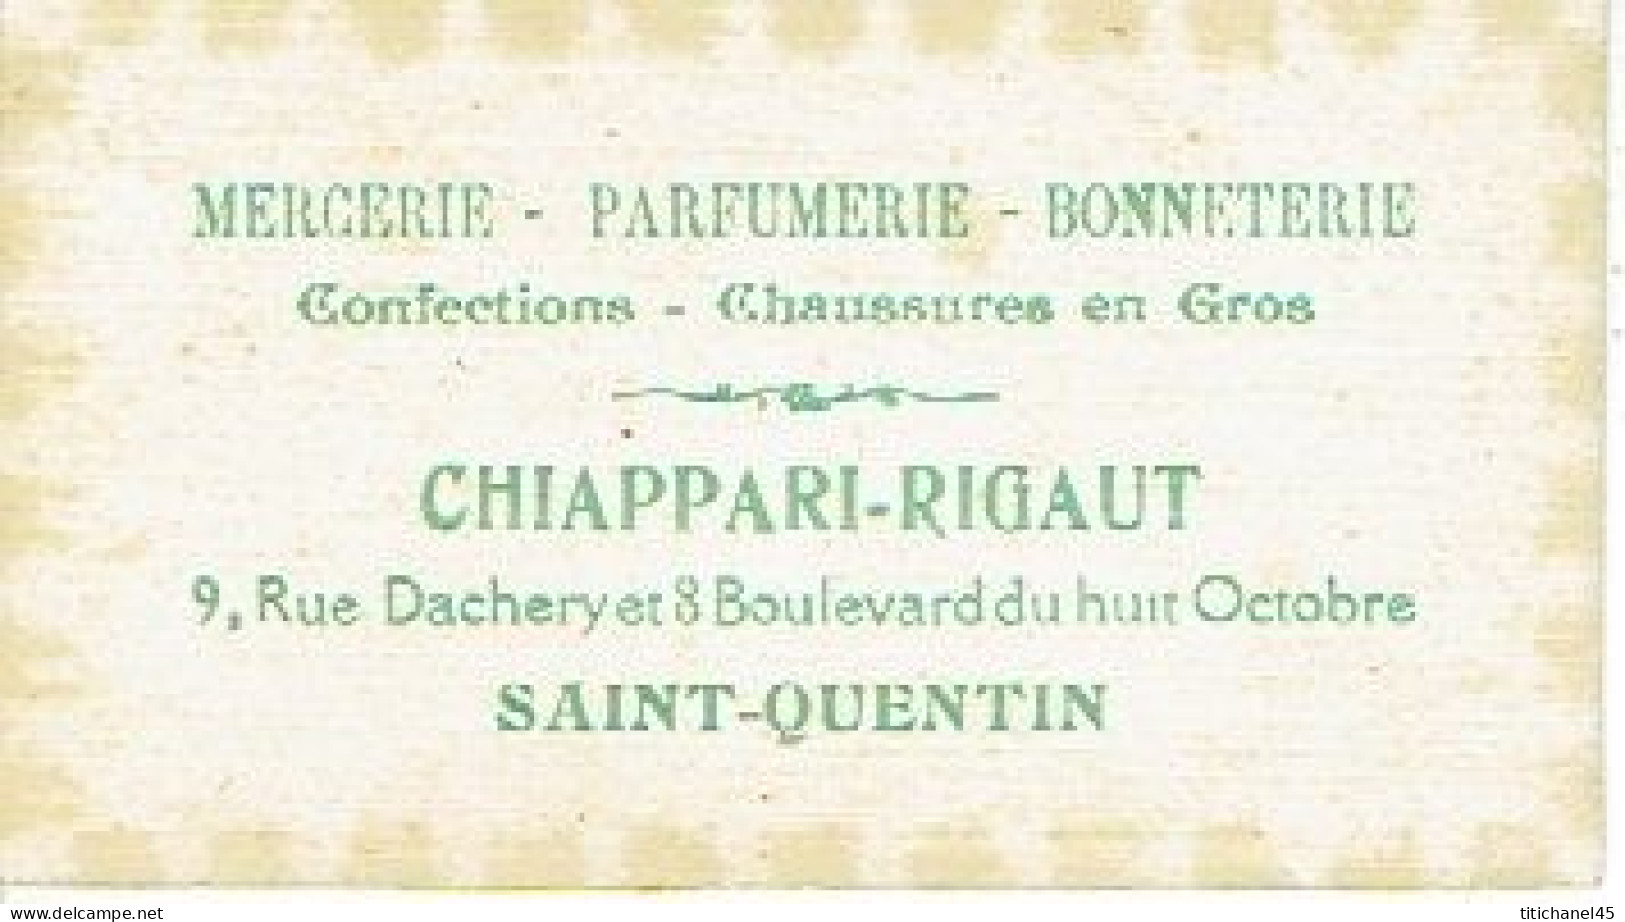 Carte  Parfum FETICHE  De L.T. PIVER - Carte Offerte Par Parfumerie CHIAPPARI-RIGAUT à PARIS - Vintage (until 1960)